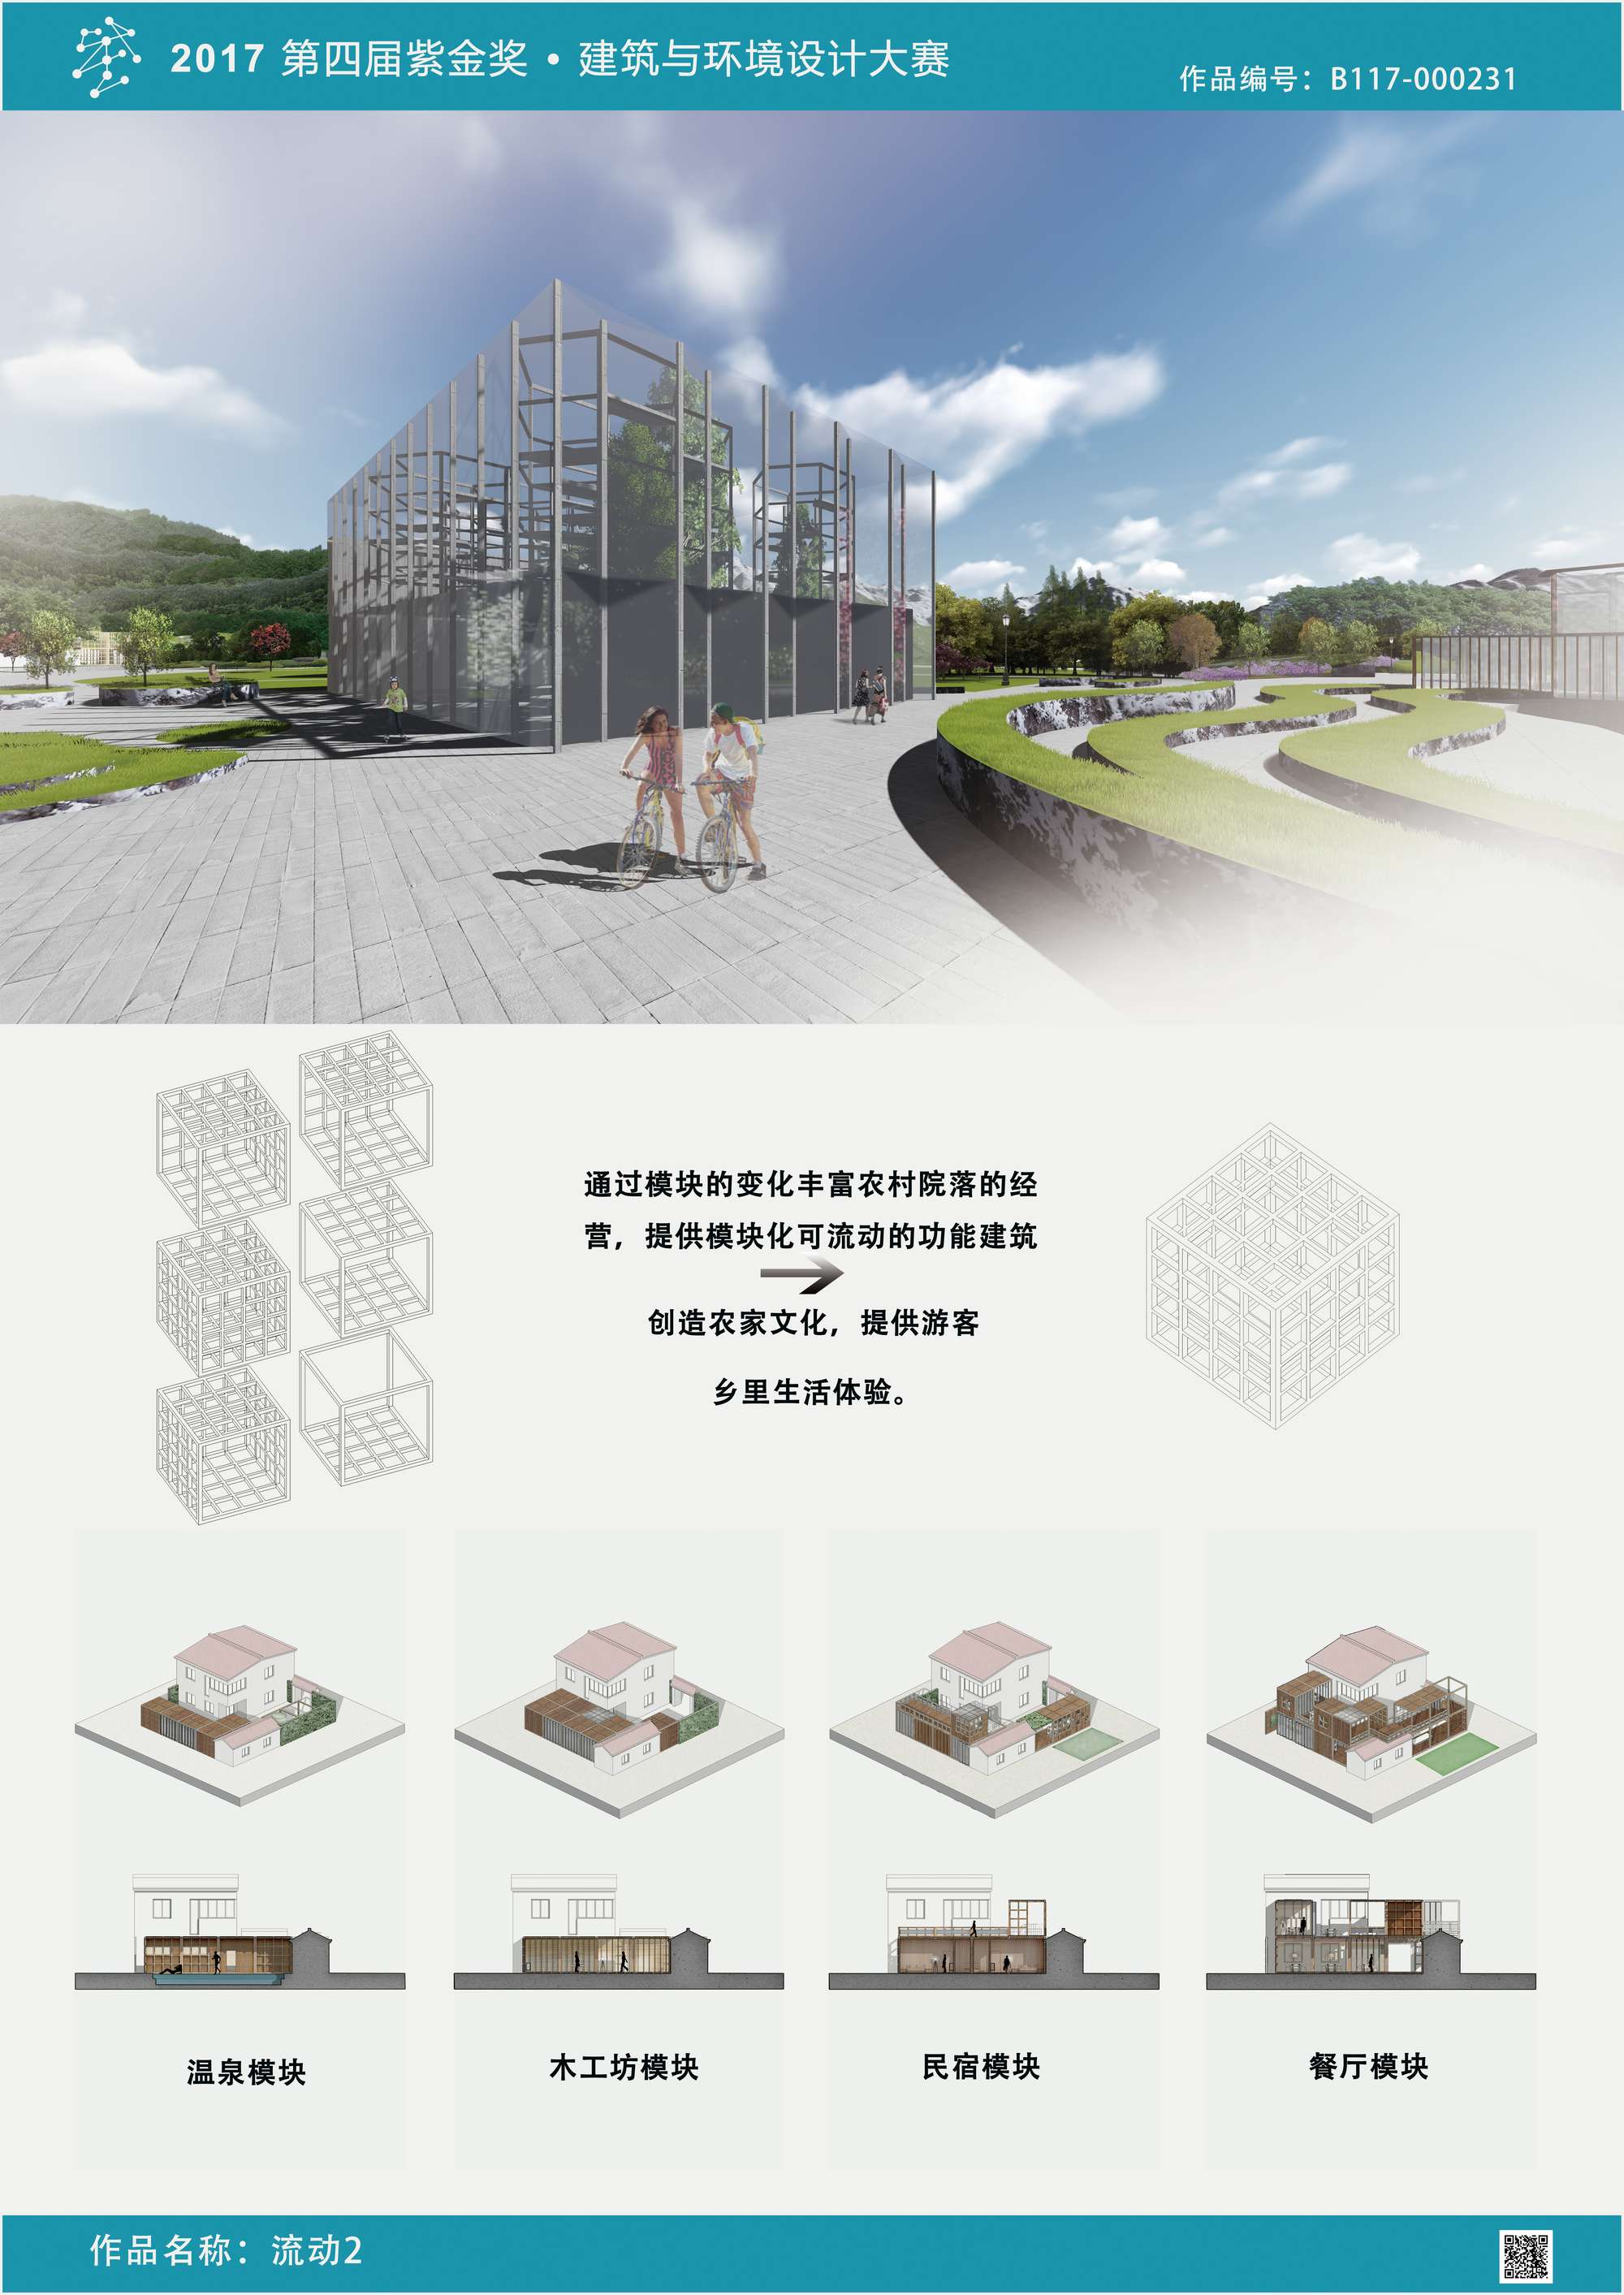 “2019米兰设计周--中国高校设计学科师生优秀作品展”获奖作品公布